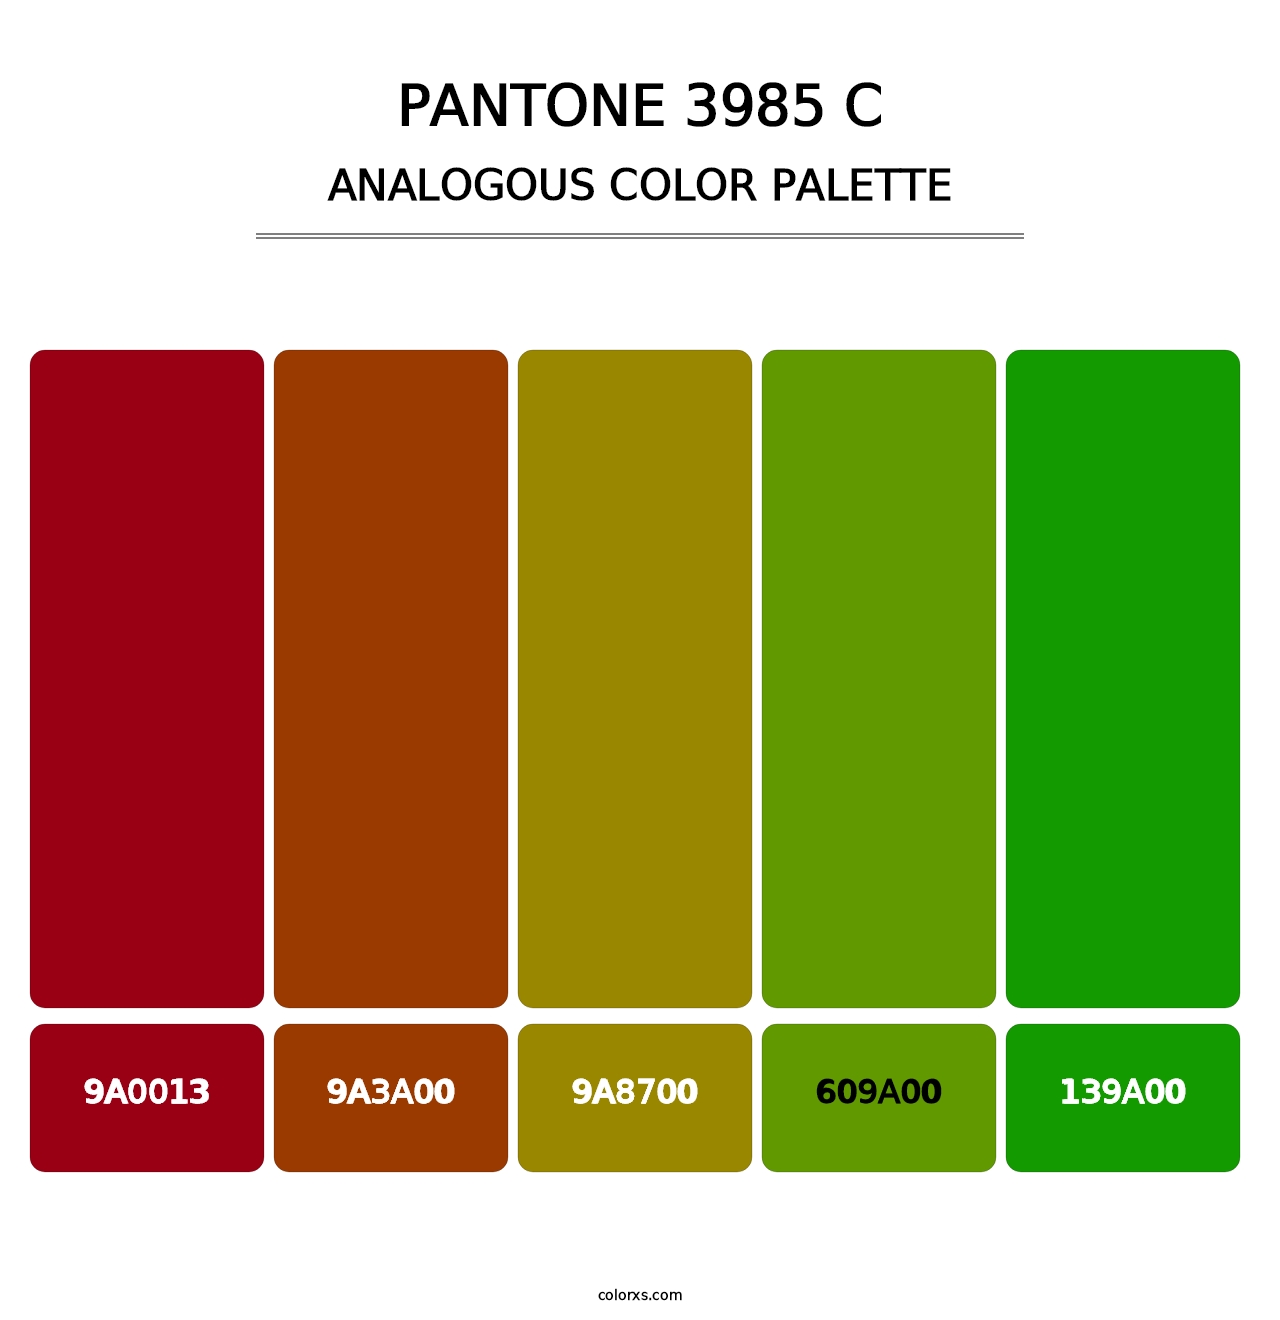 PANTONE 3985 C - Analogous Color Palette